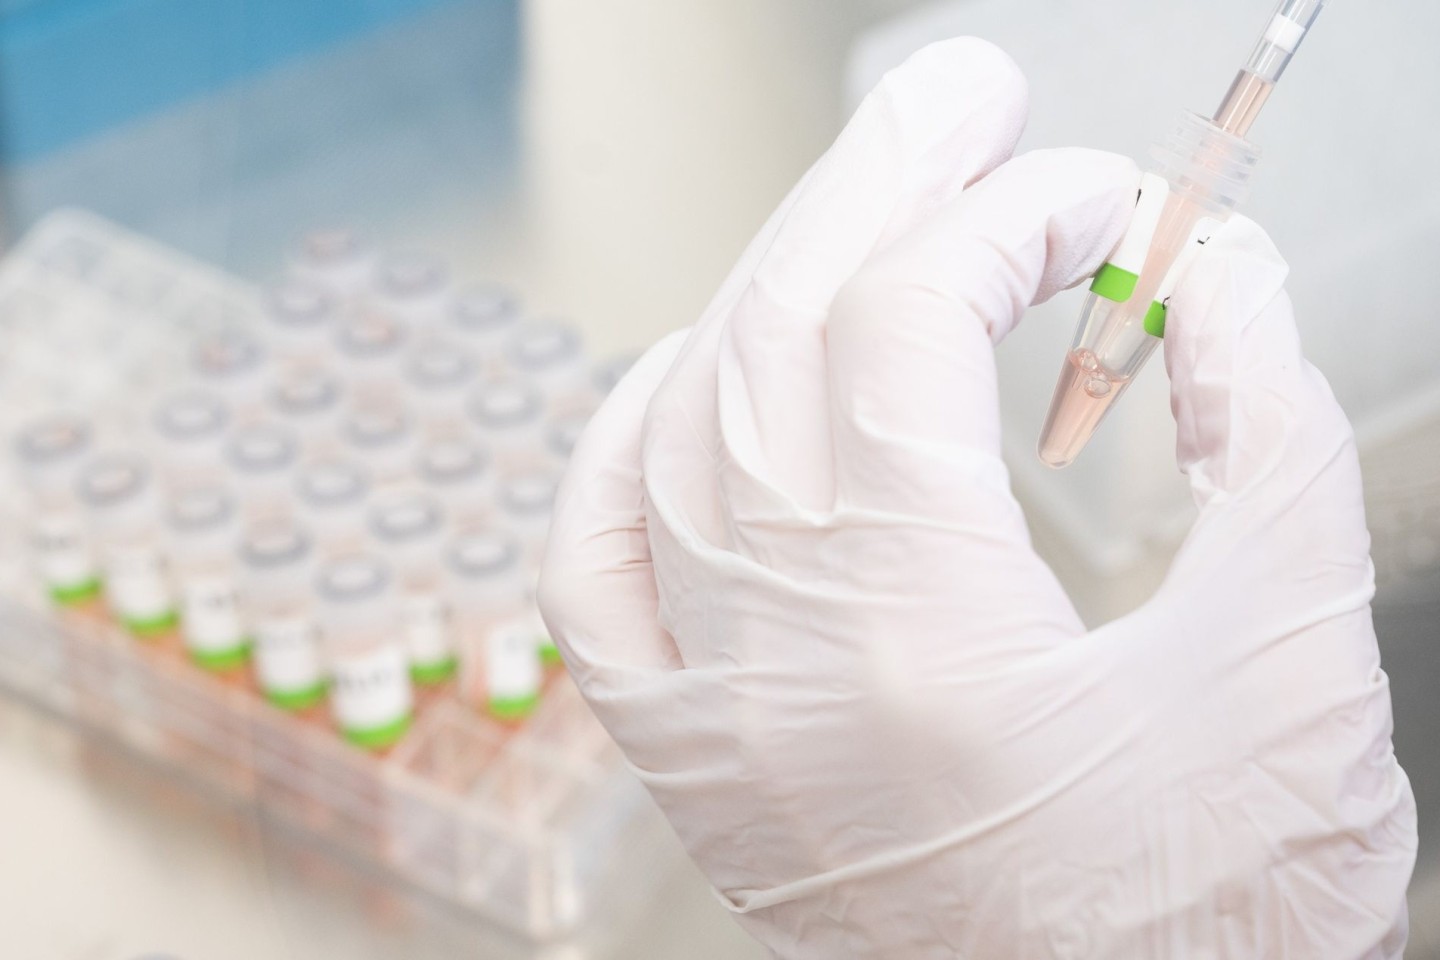 Eine biologisch-technische Assistentin bereitet PCR-Tests auf das Coronavirus vor.